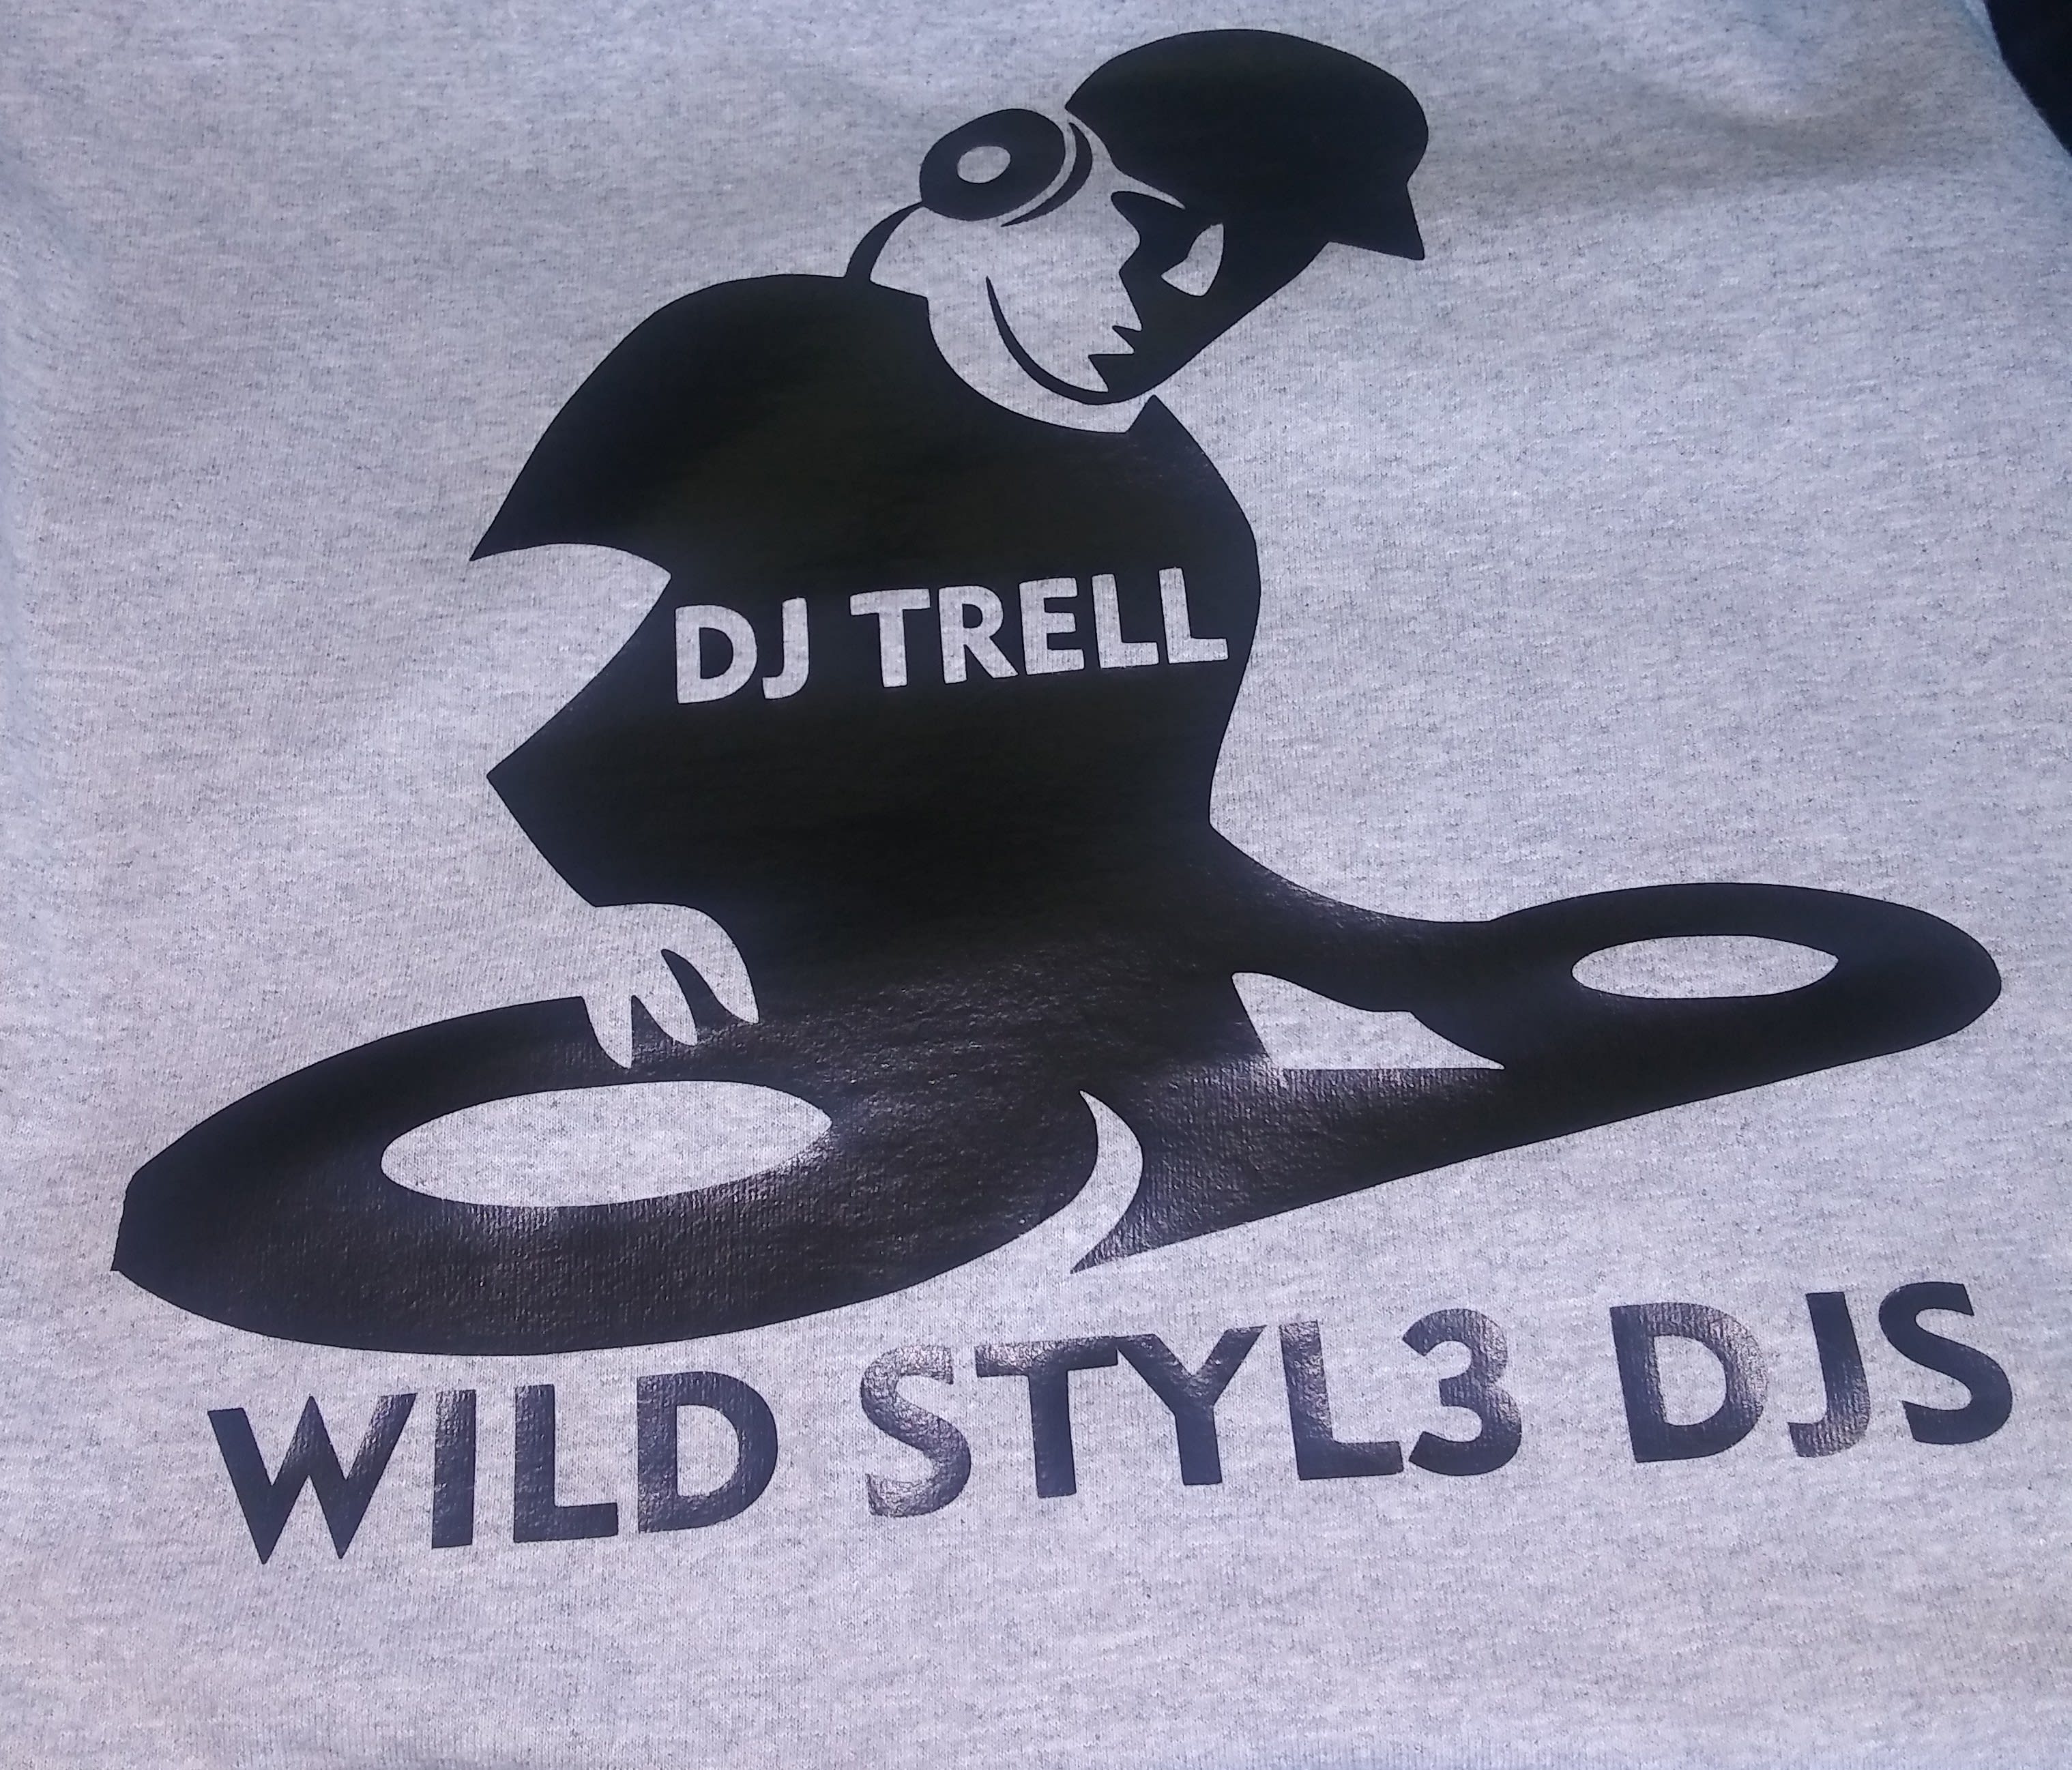 Wild Stylez DJ'Z